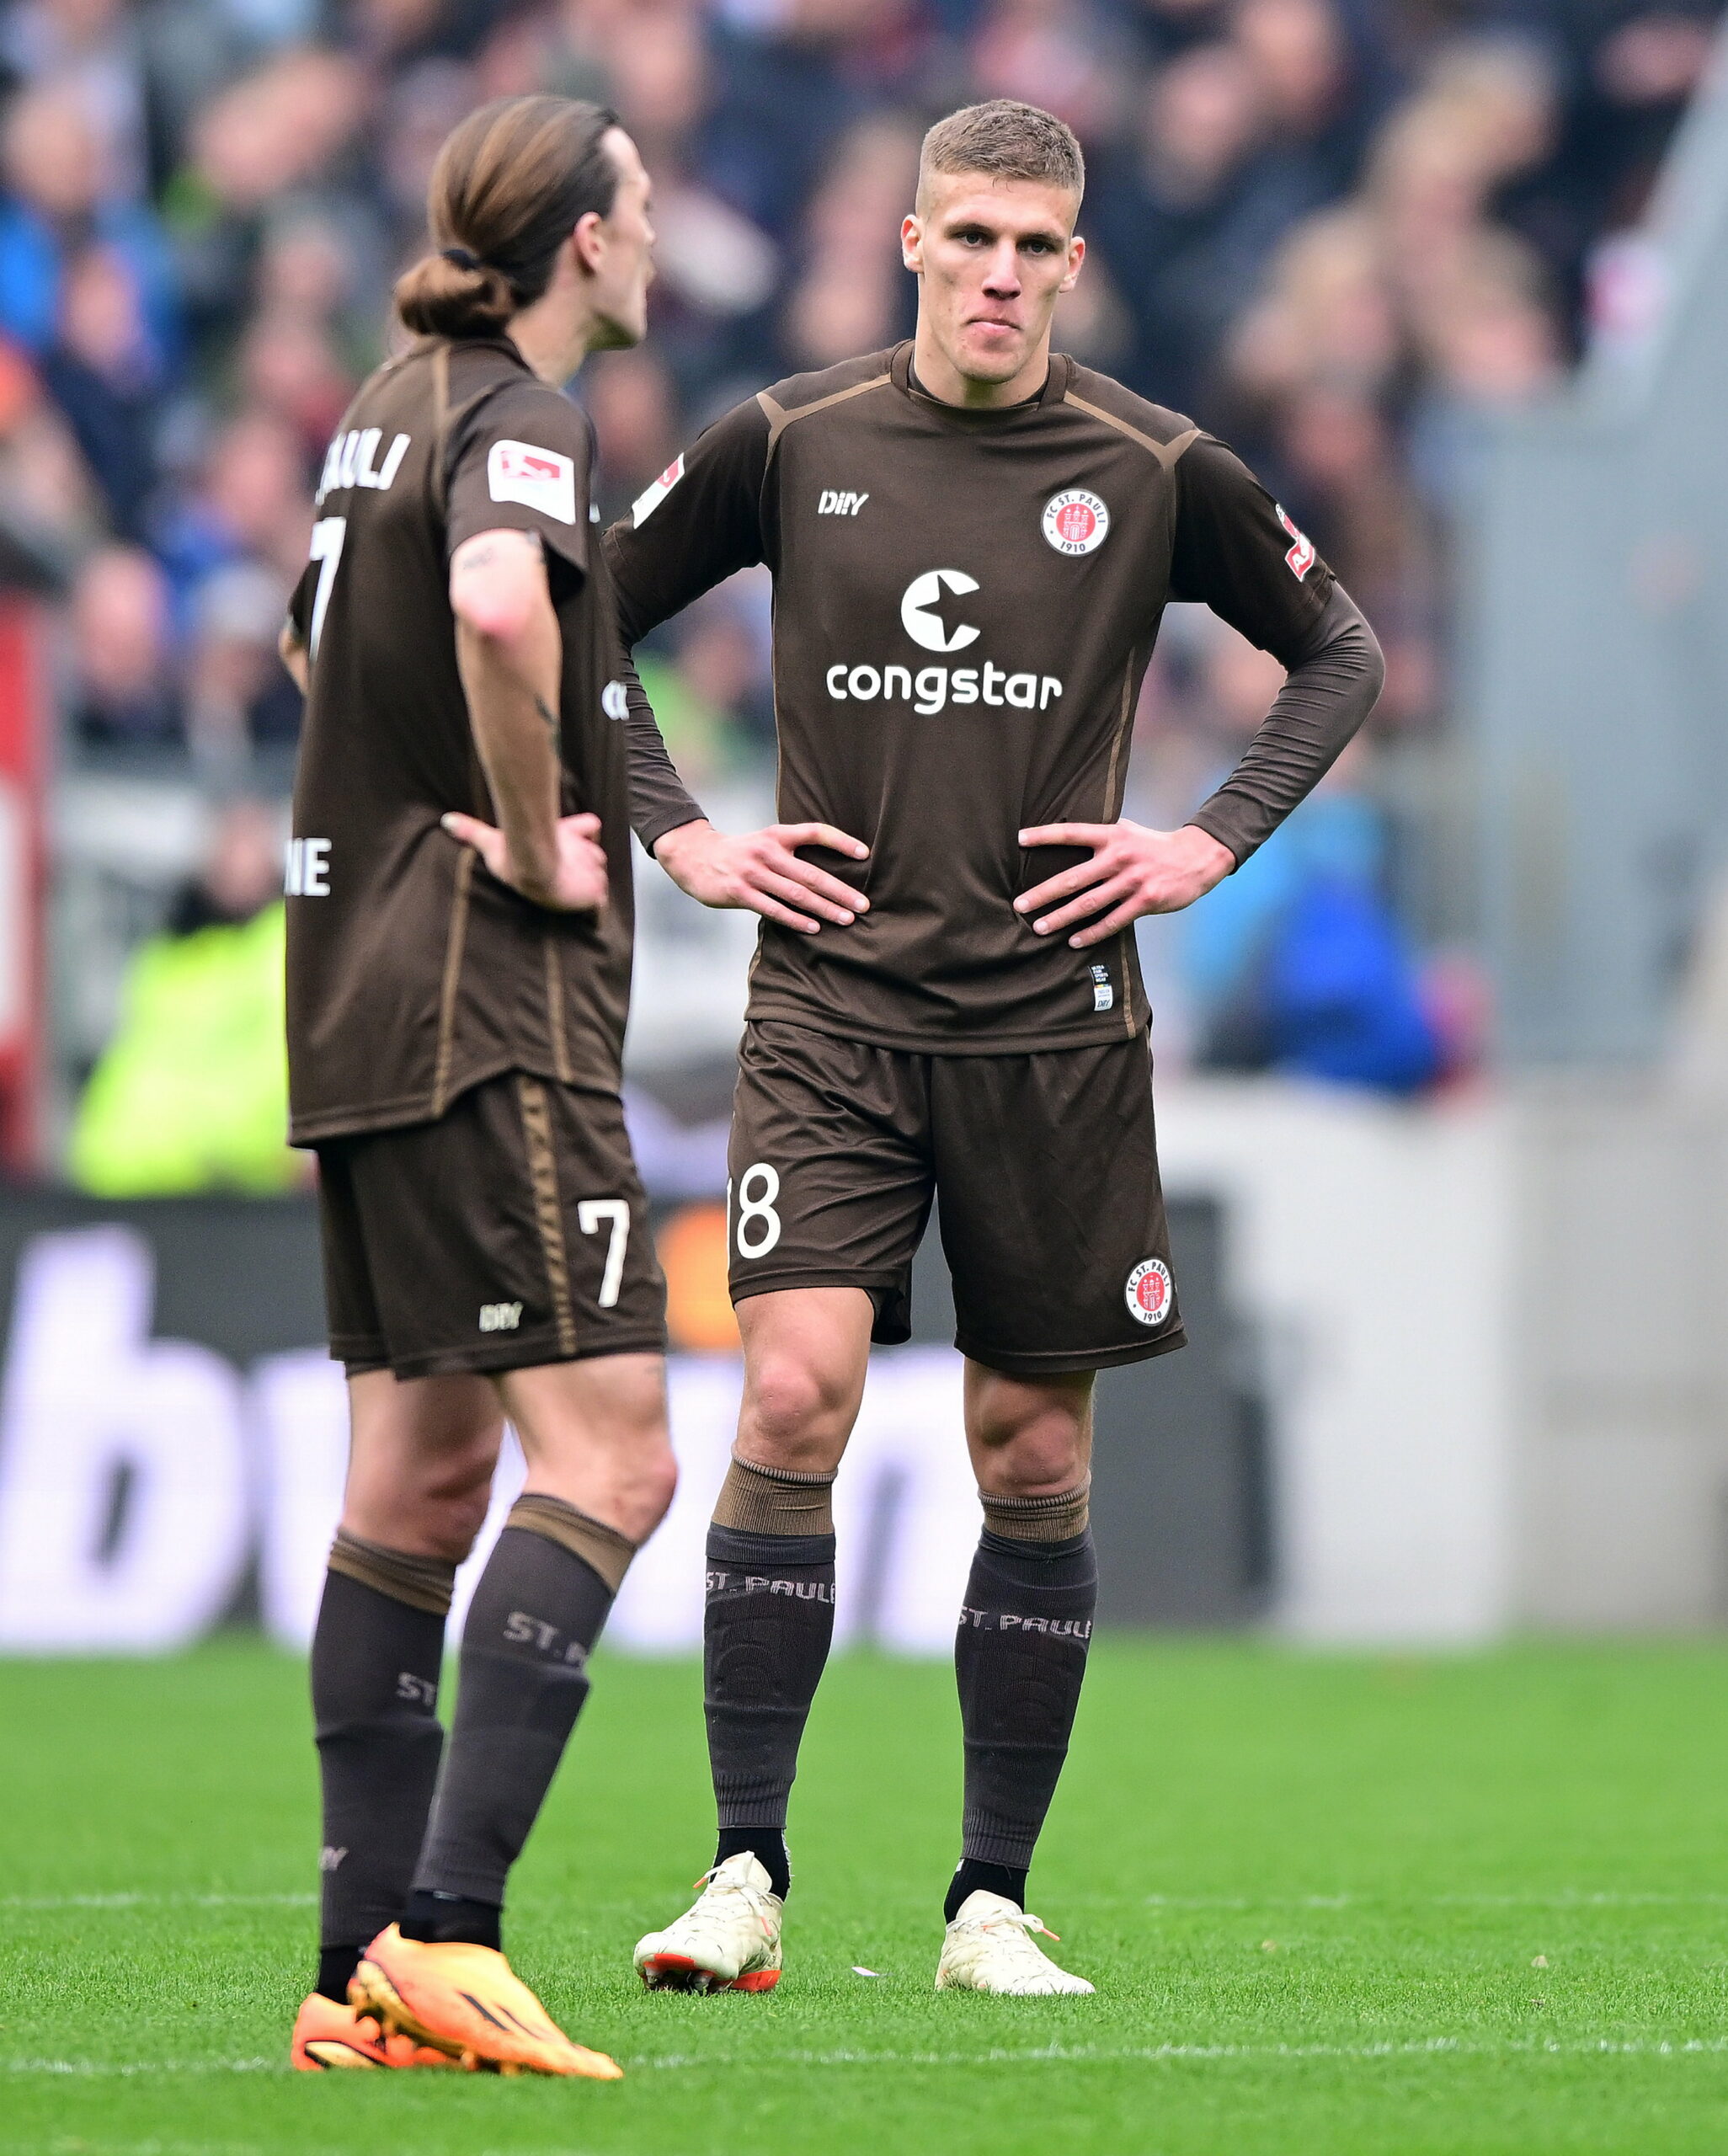 Die Enttäuschung ist bei den Spielern des FC St. Pauli nach der Niederlage gegen Eintracht Braunschweig groß.